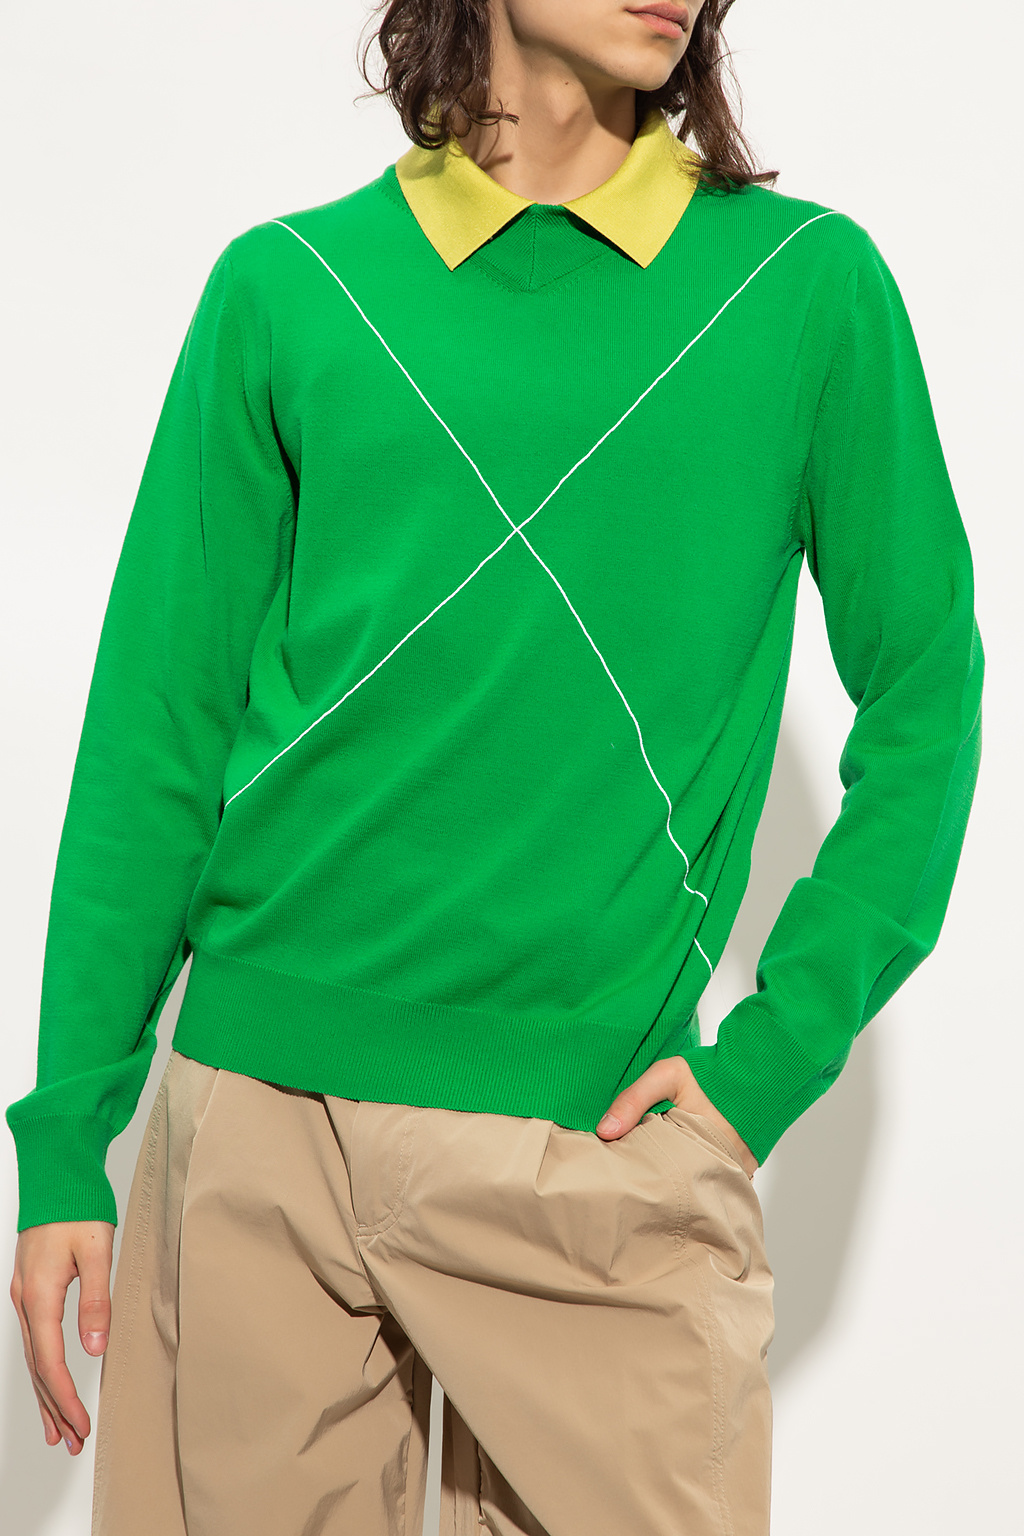 Green Wool sweater Bottega Veneta - IetpShops GB - Bottega Veneta